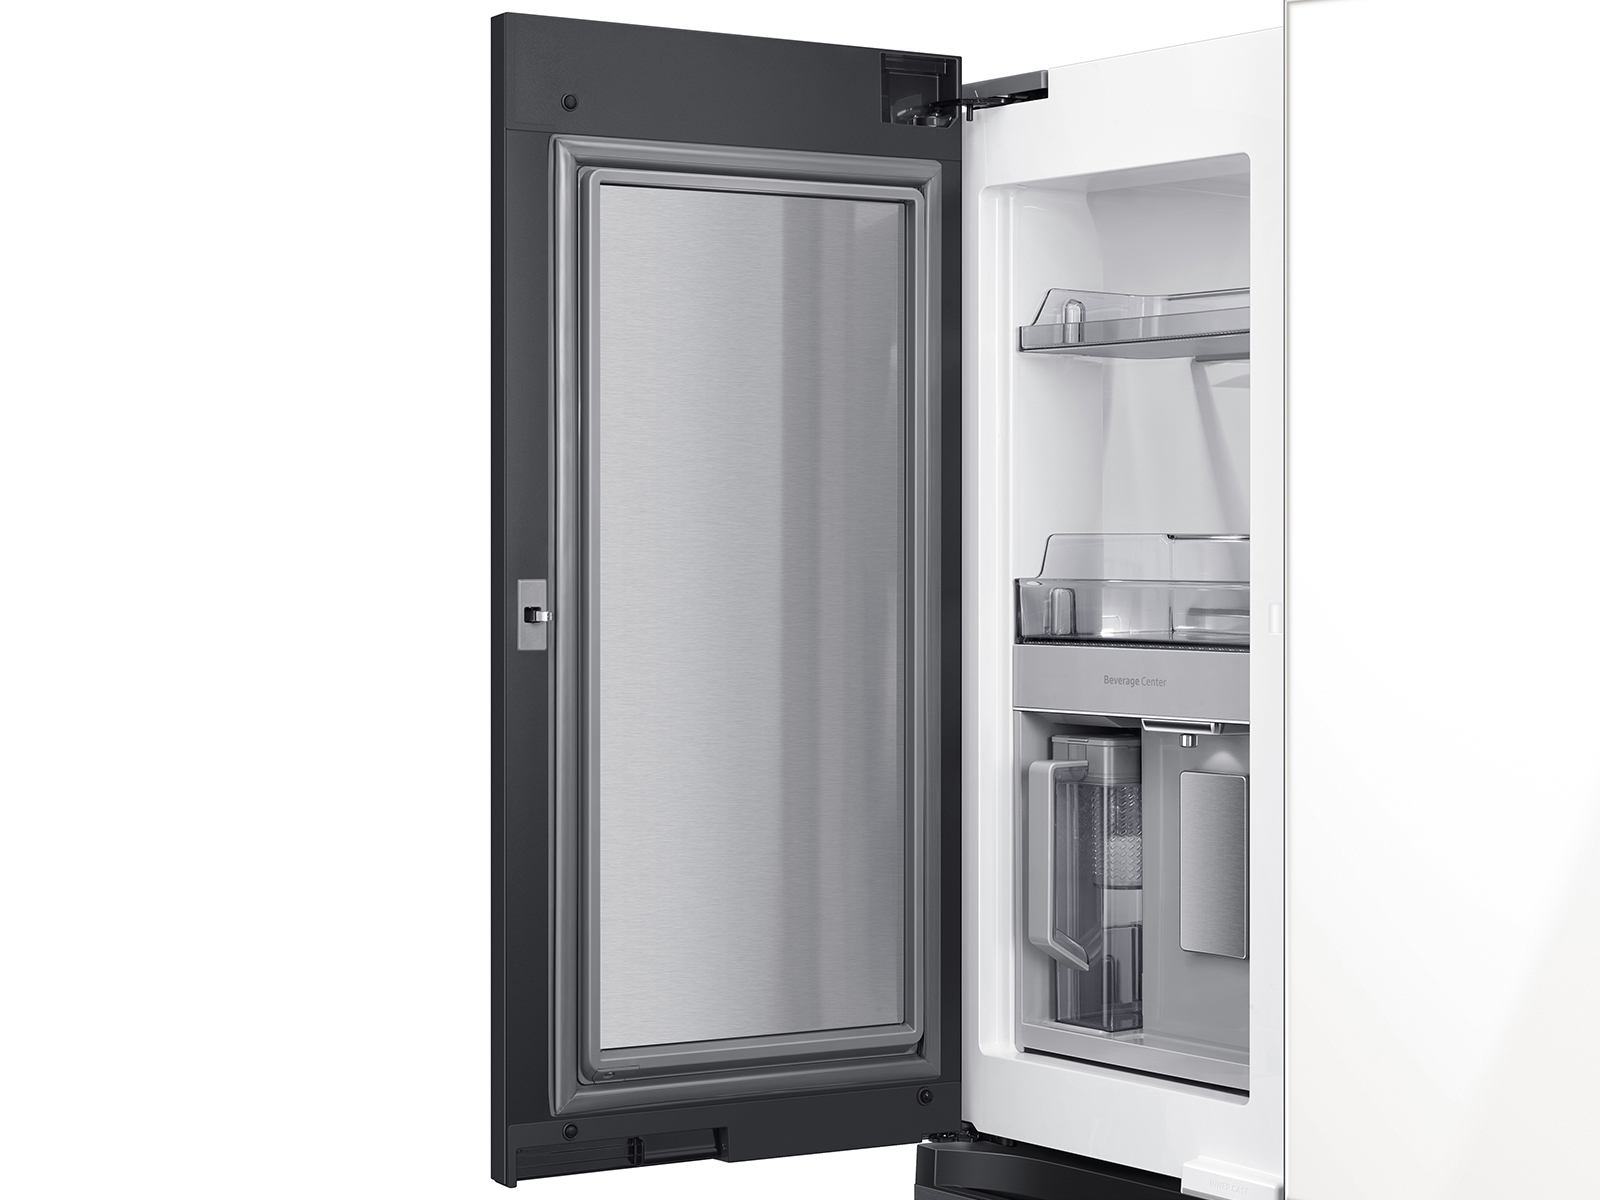 Thumbnail image of Bespoke 4-Door Flex™ Refrigerator (23 cu. ft.) in Matte Black Steel